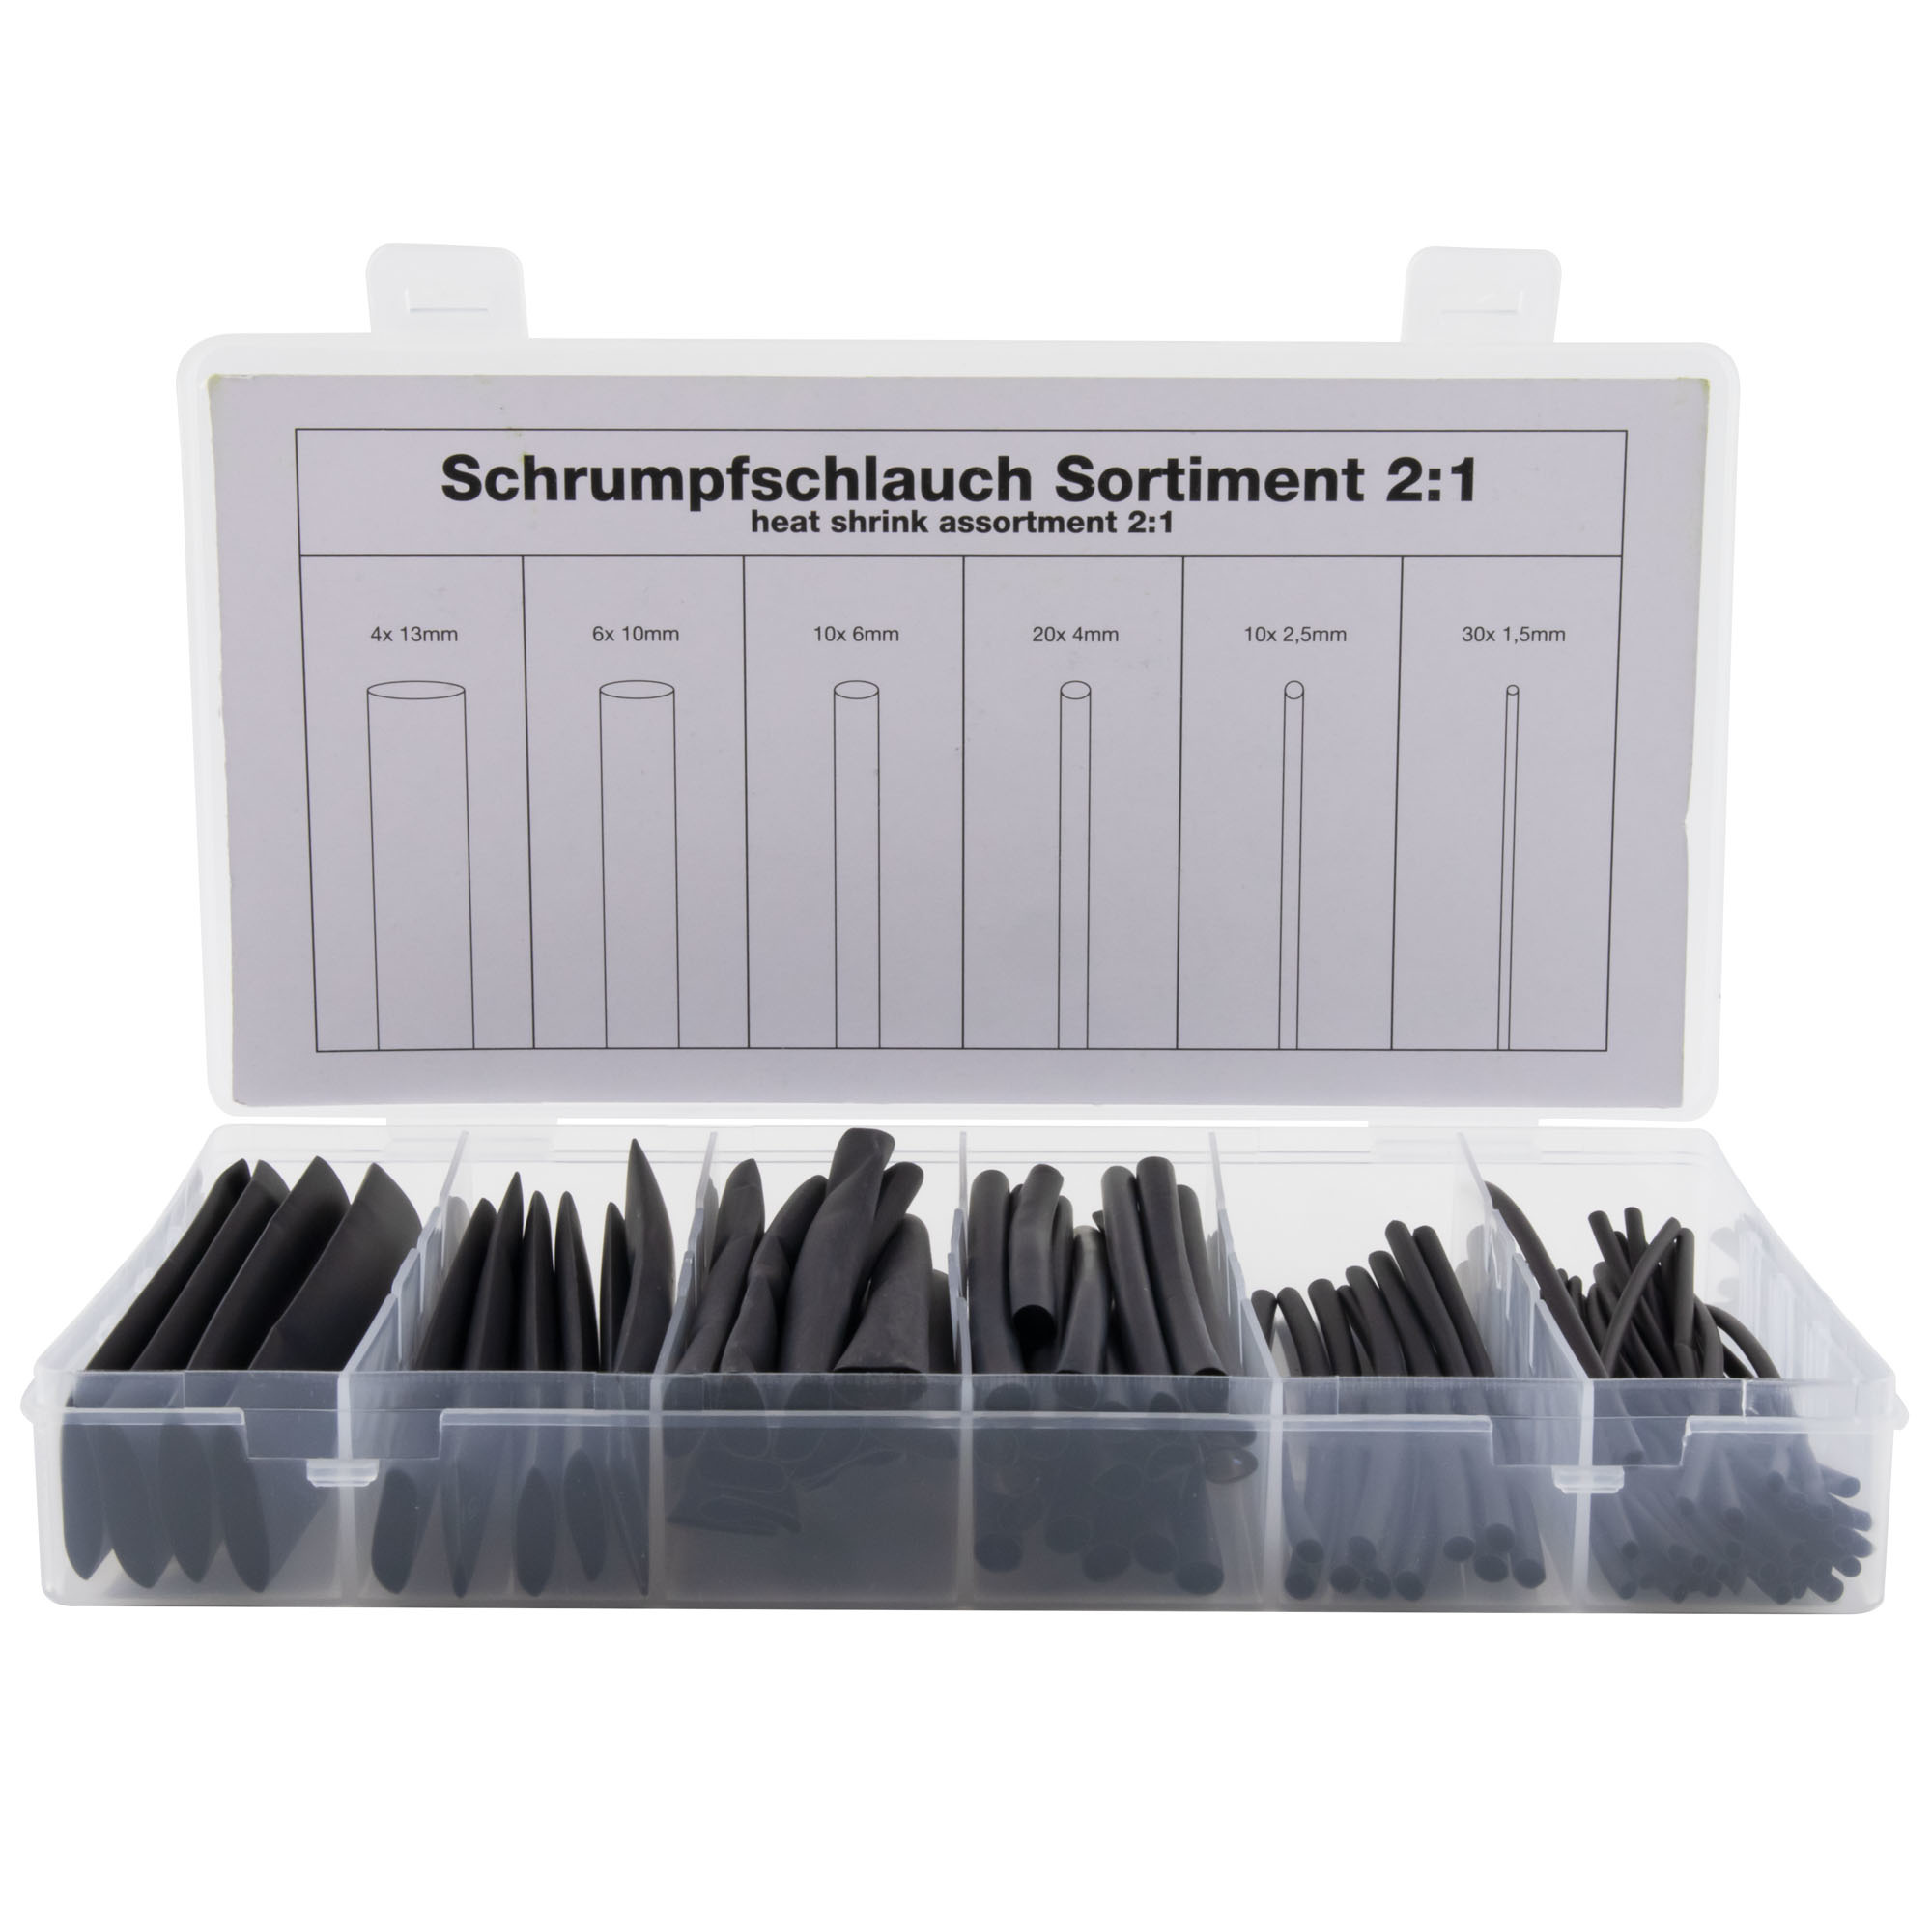 Schrumpfschlauch Sortiment 2:1 10cm 80 Teile black